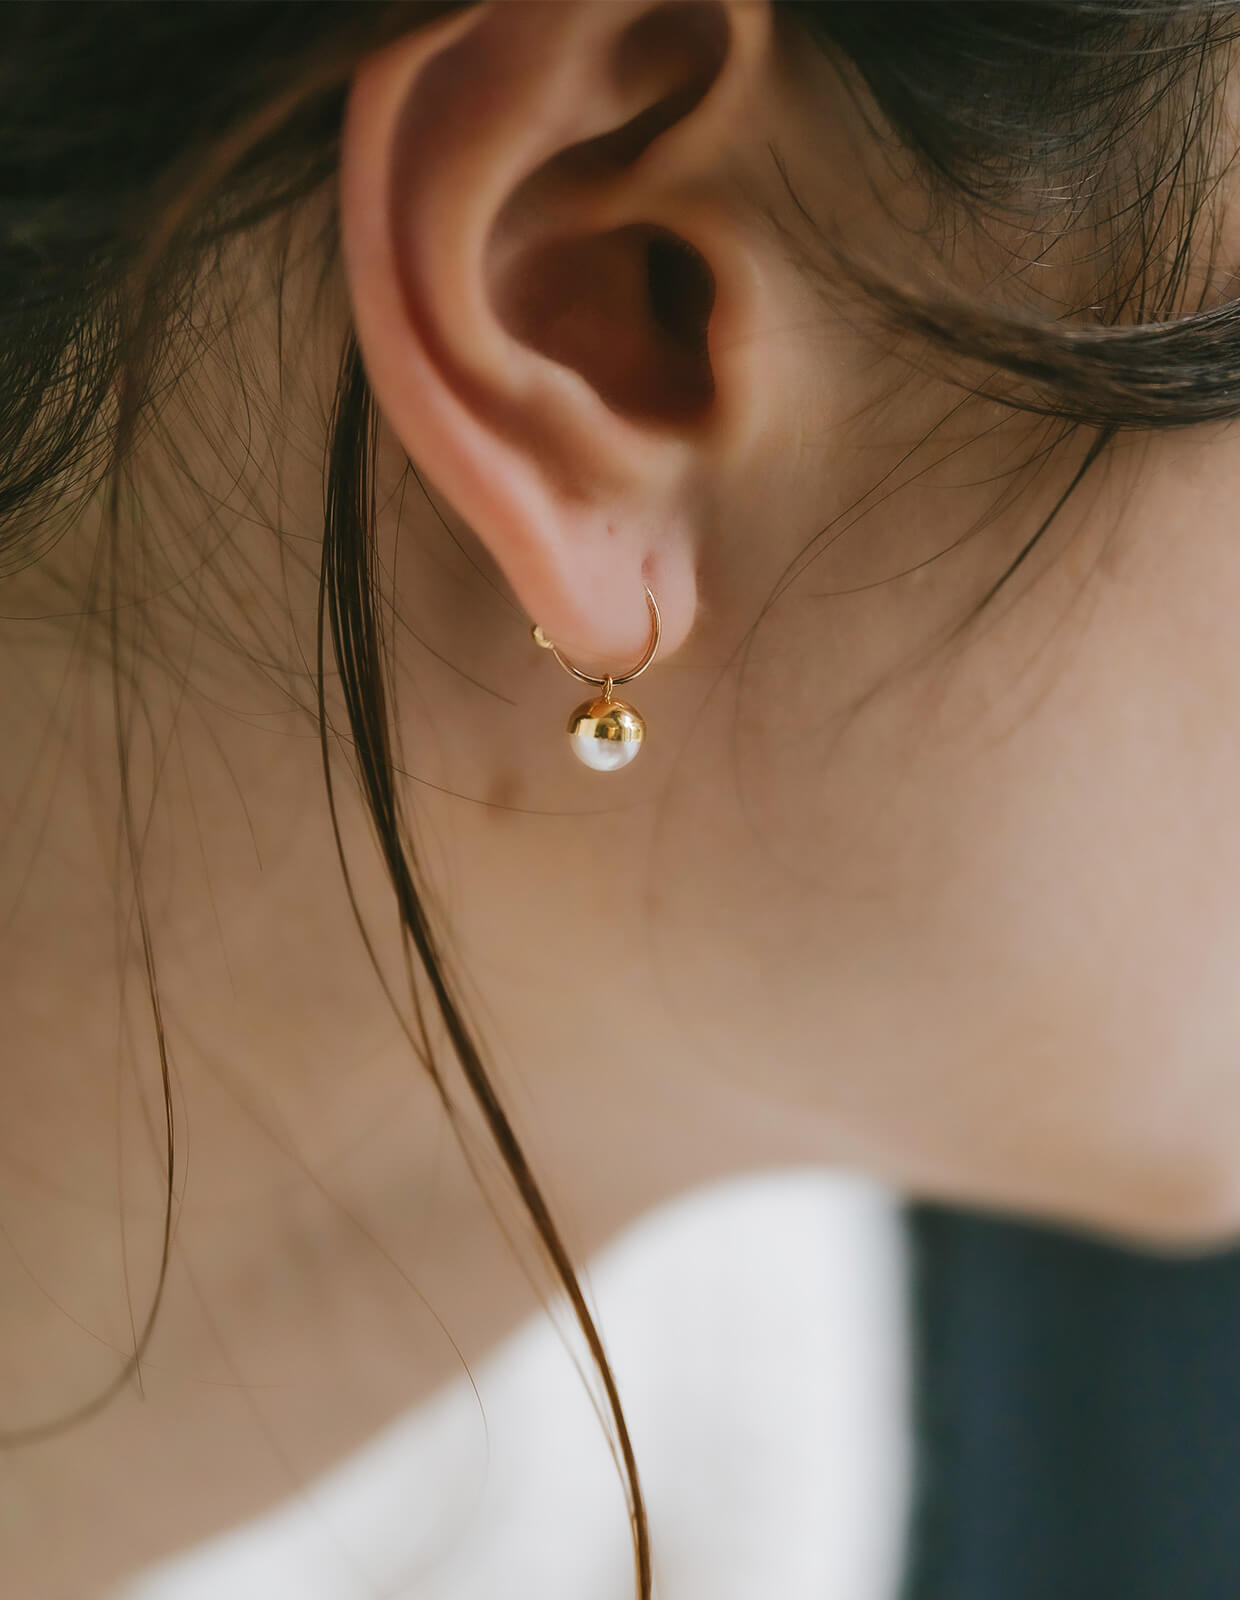 18K Ping Gold Swirl Pearl Earrings | SUZURAN